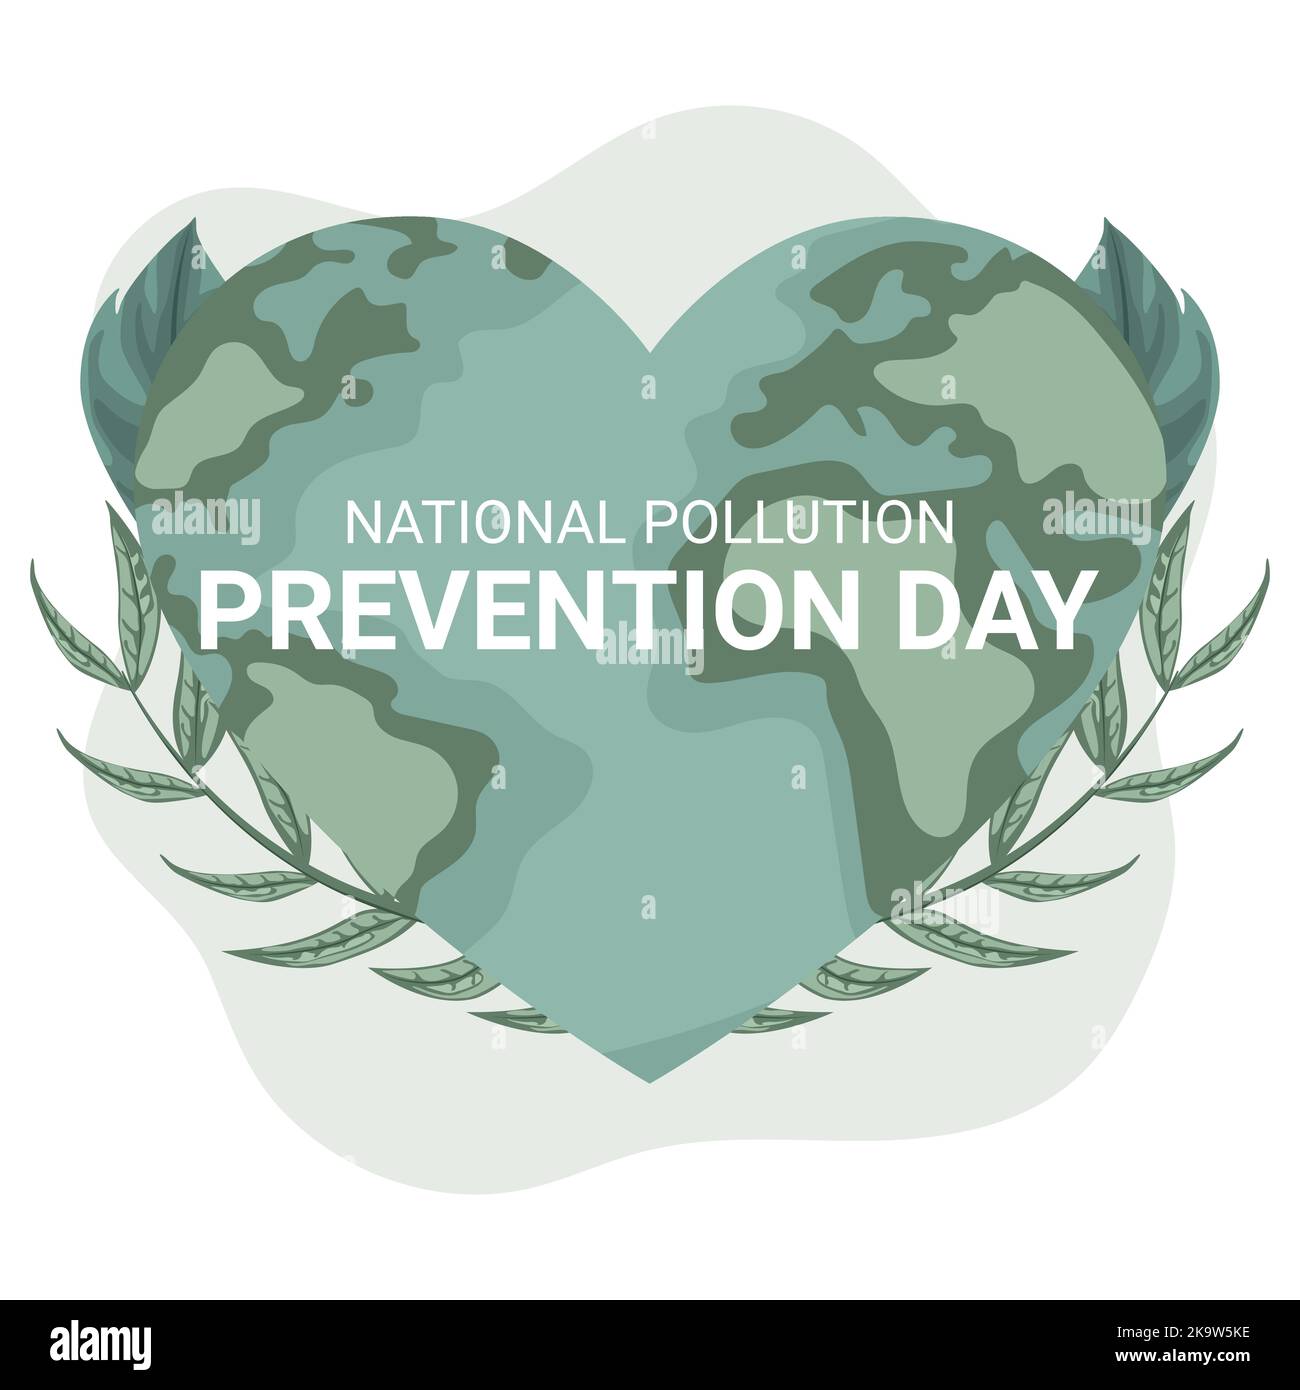 Nationale Vermeidung von Umweltverschmutzung Tag-Design mit Planet Erde in Form eines Herzens und Blätter. Poster, um das Bewusstsein für die Umwelt zu schärfen Stock Vektor